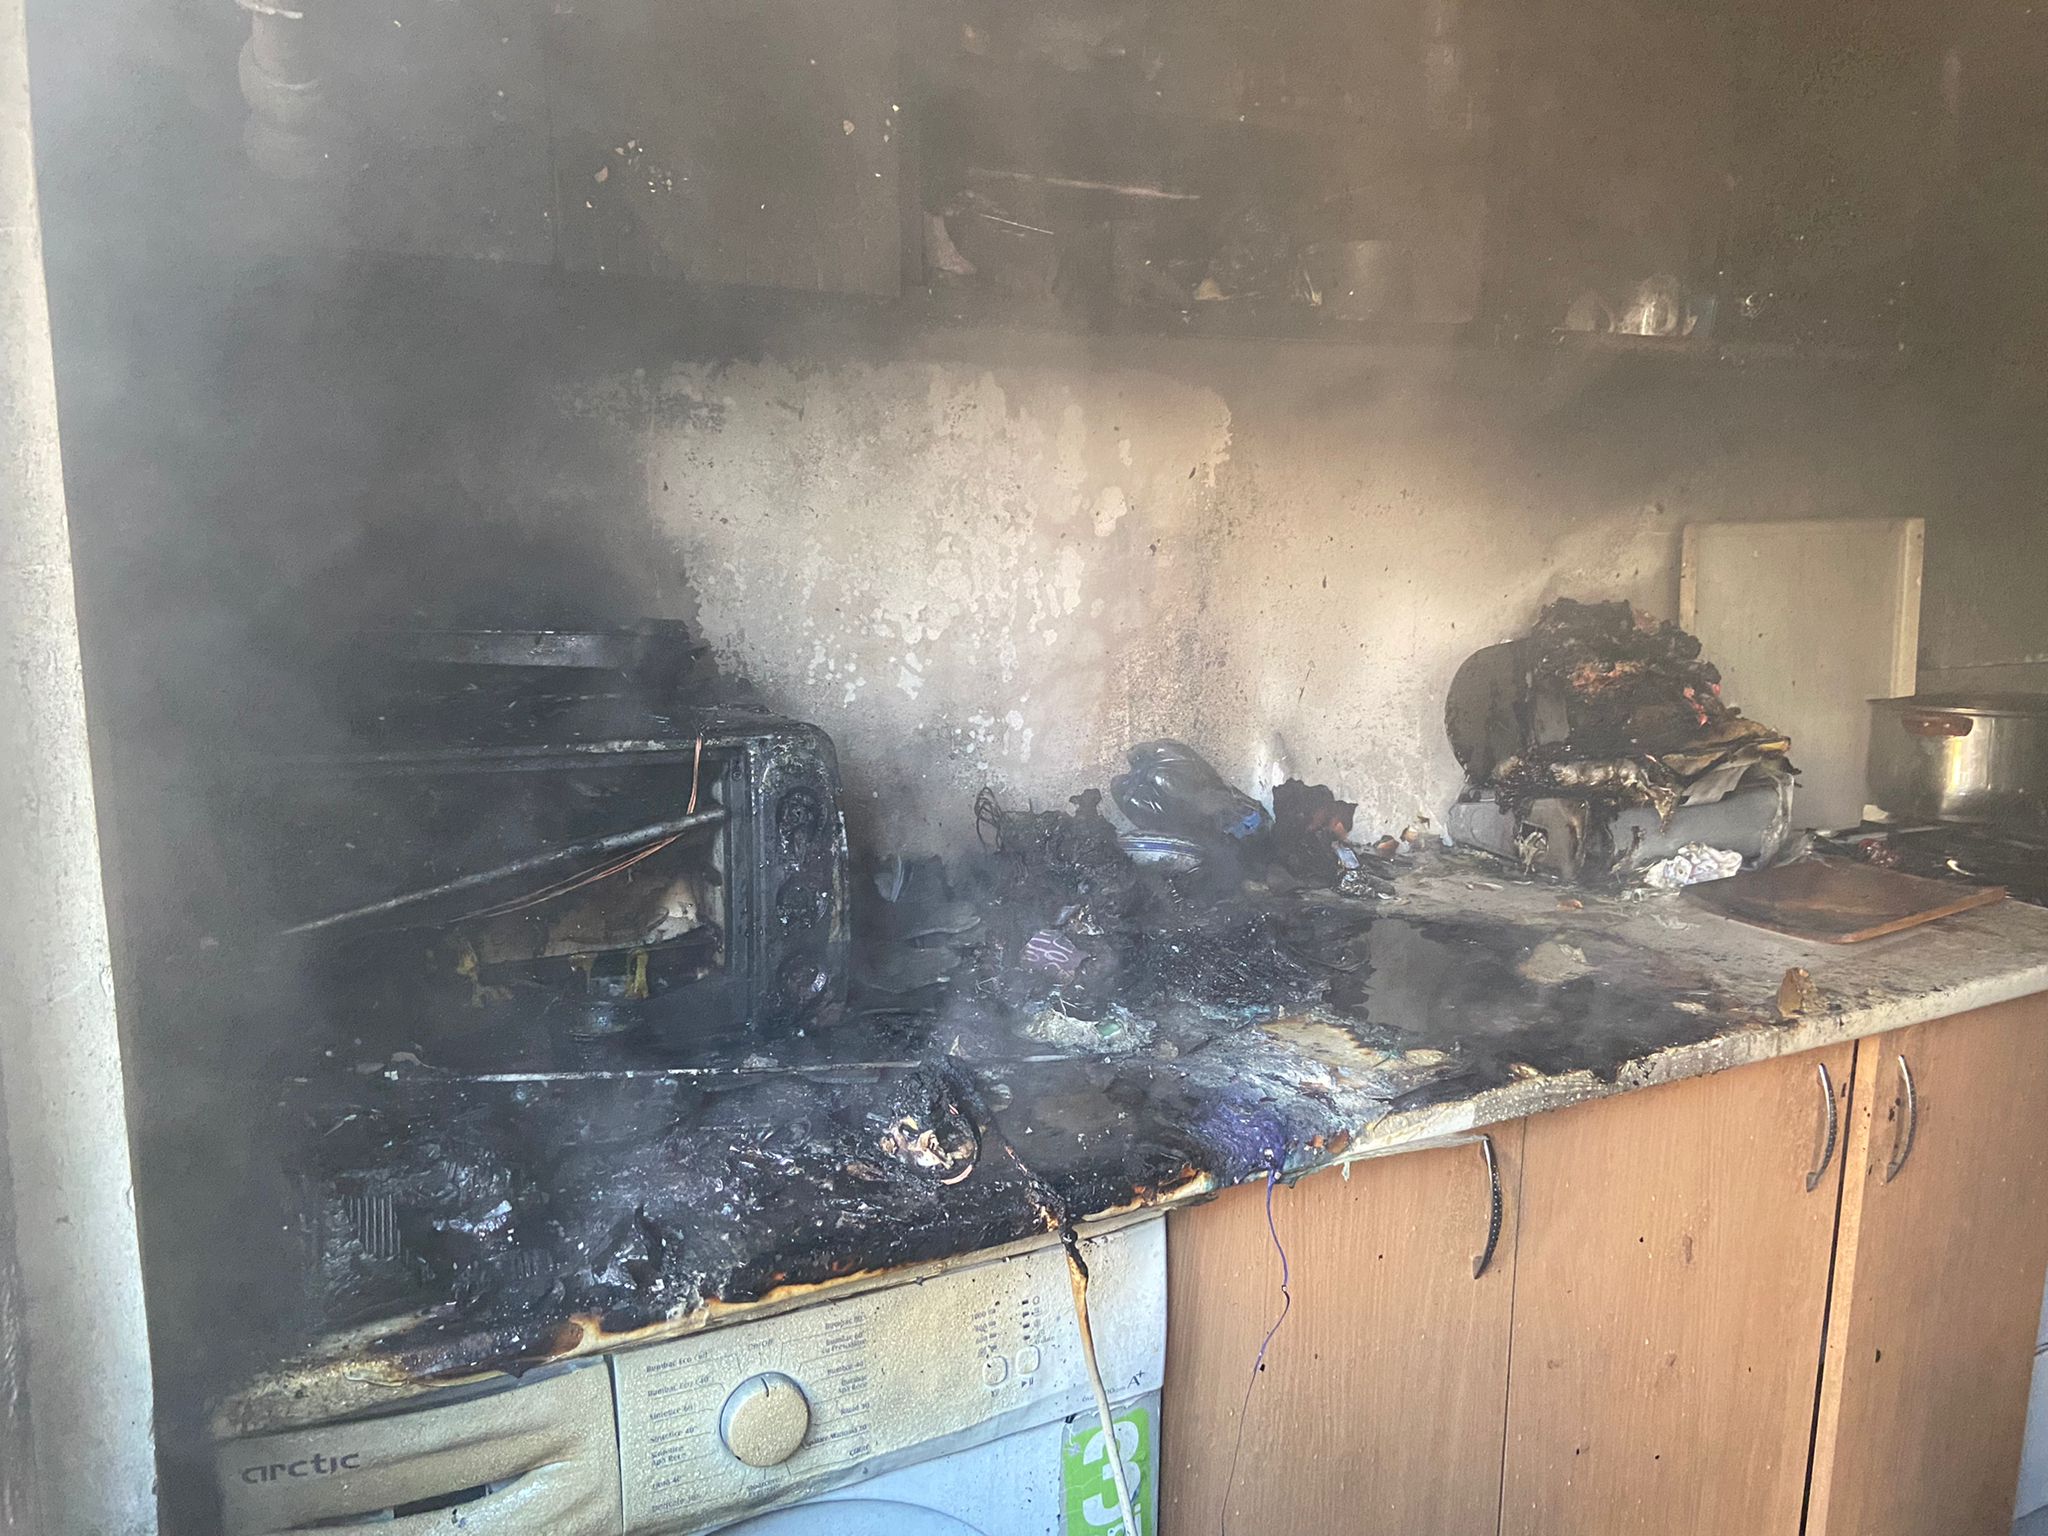 Casă incendiată în municipiu de la o lumânare lăsată nesupravegheată